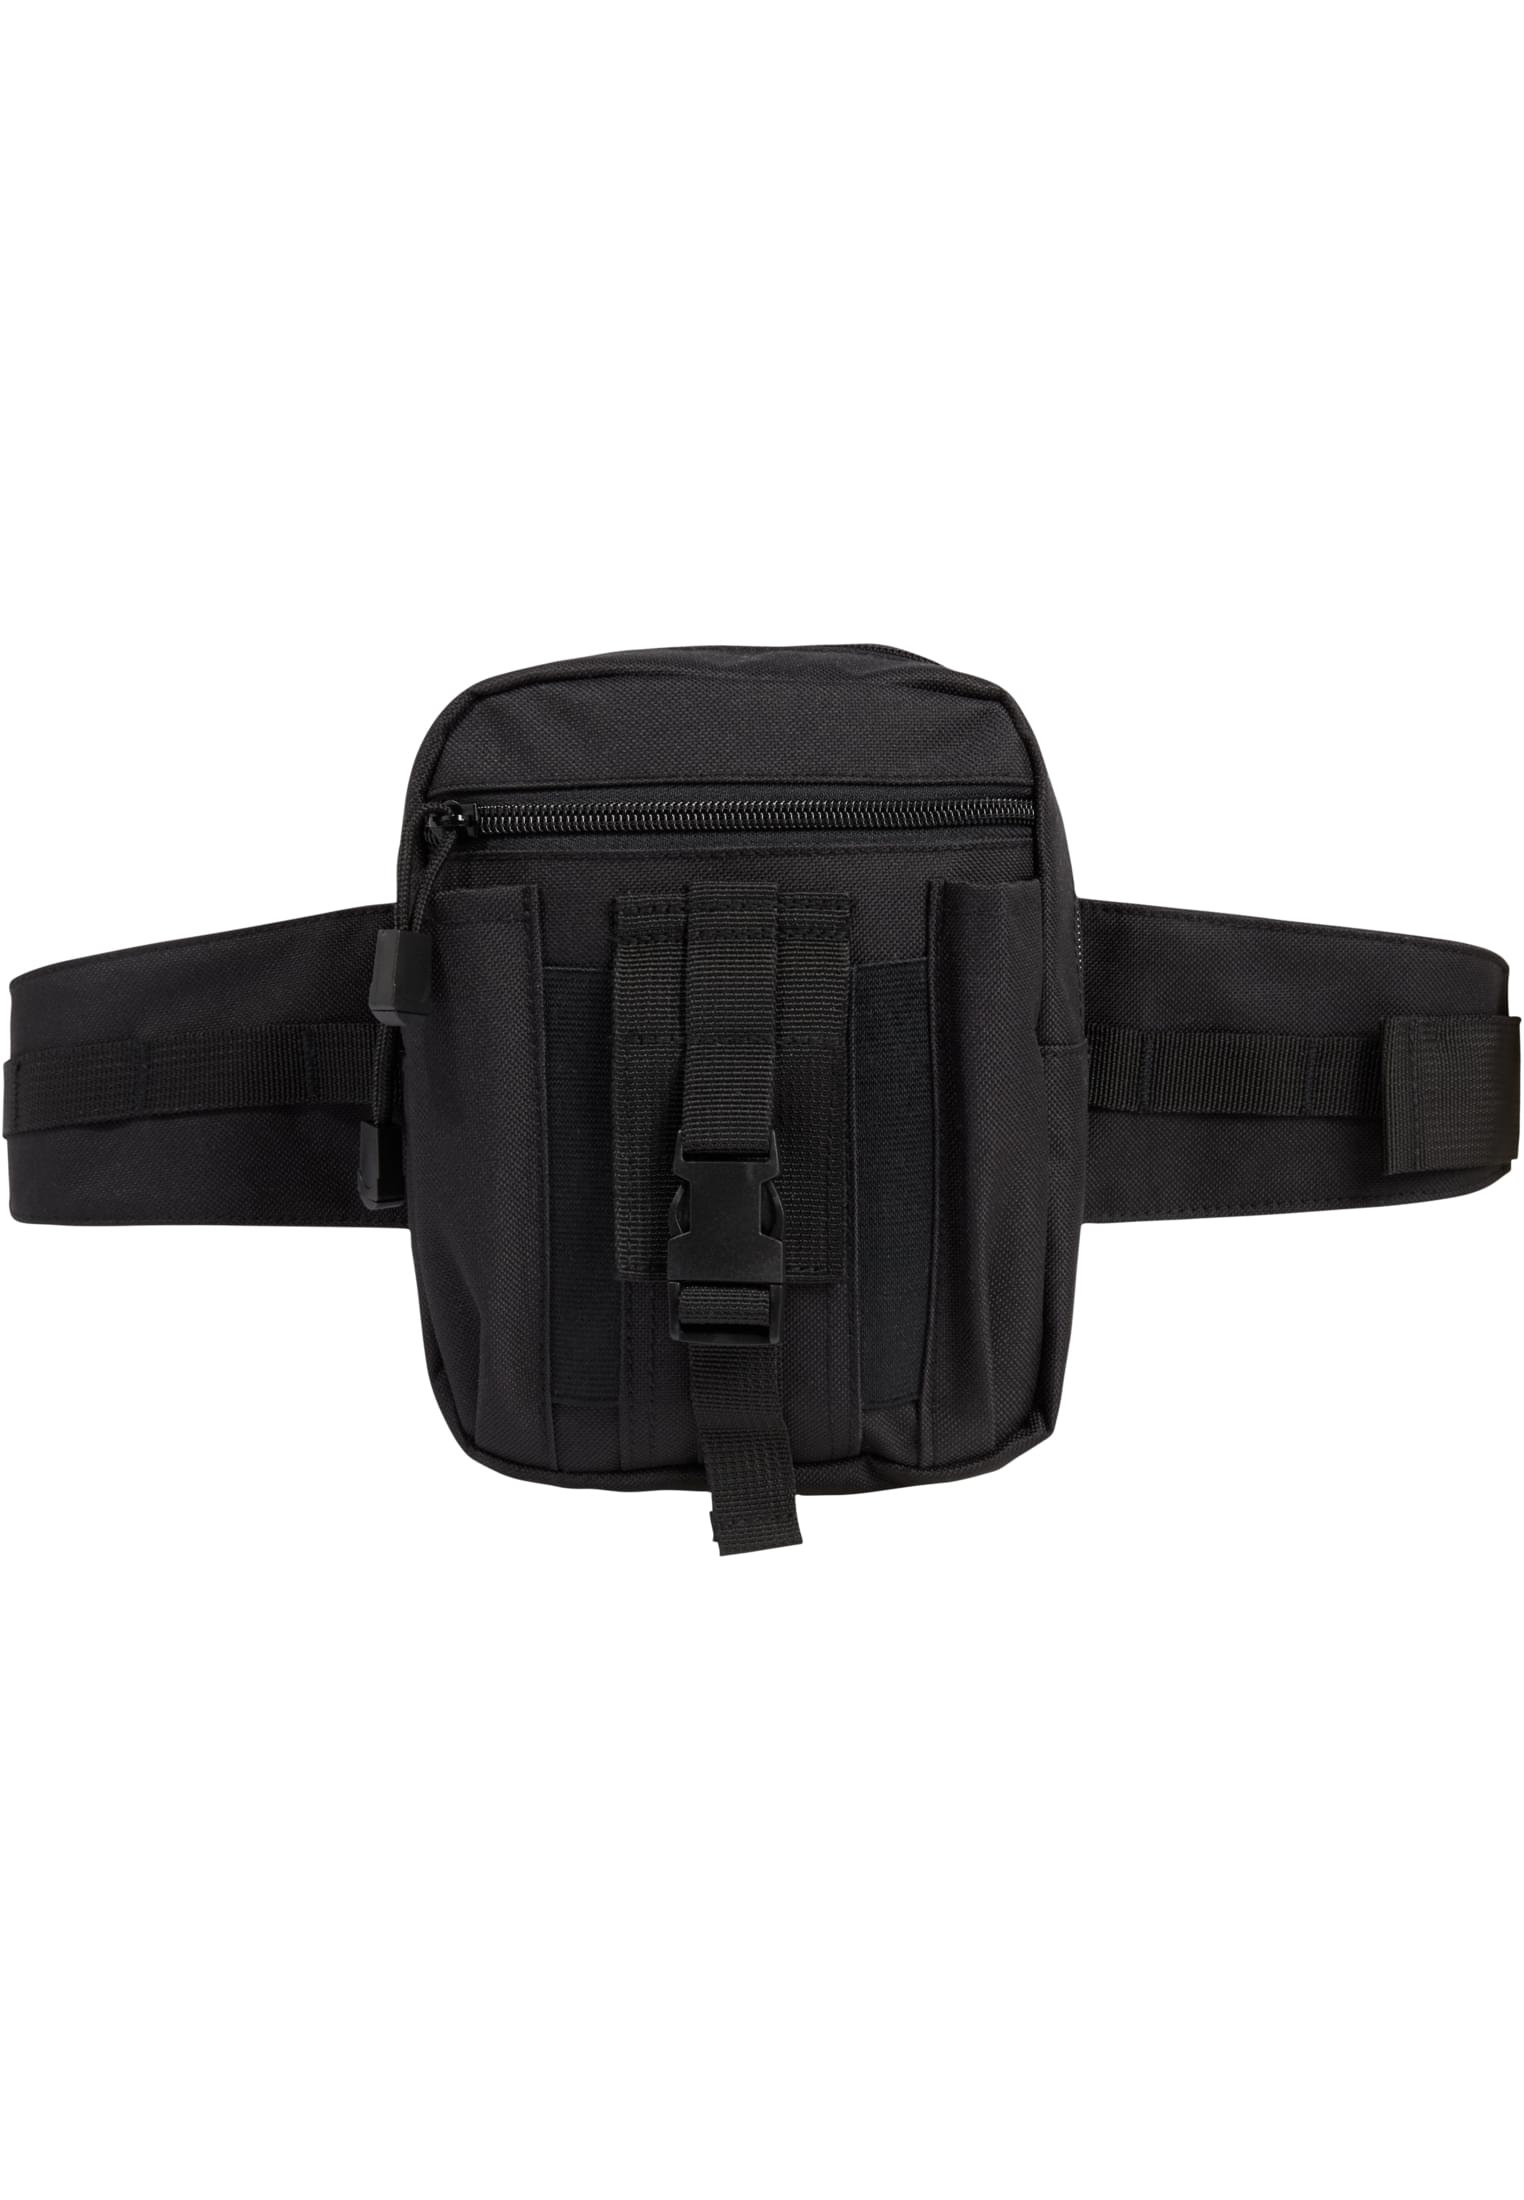 Taschen waistbeltbag Allround in Farbe black